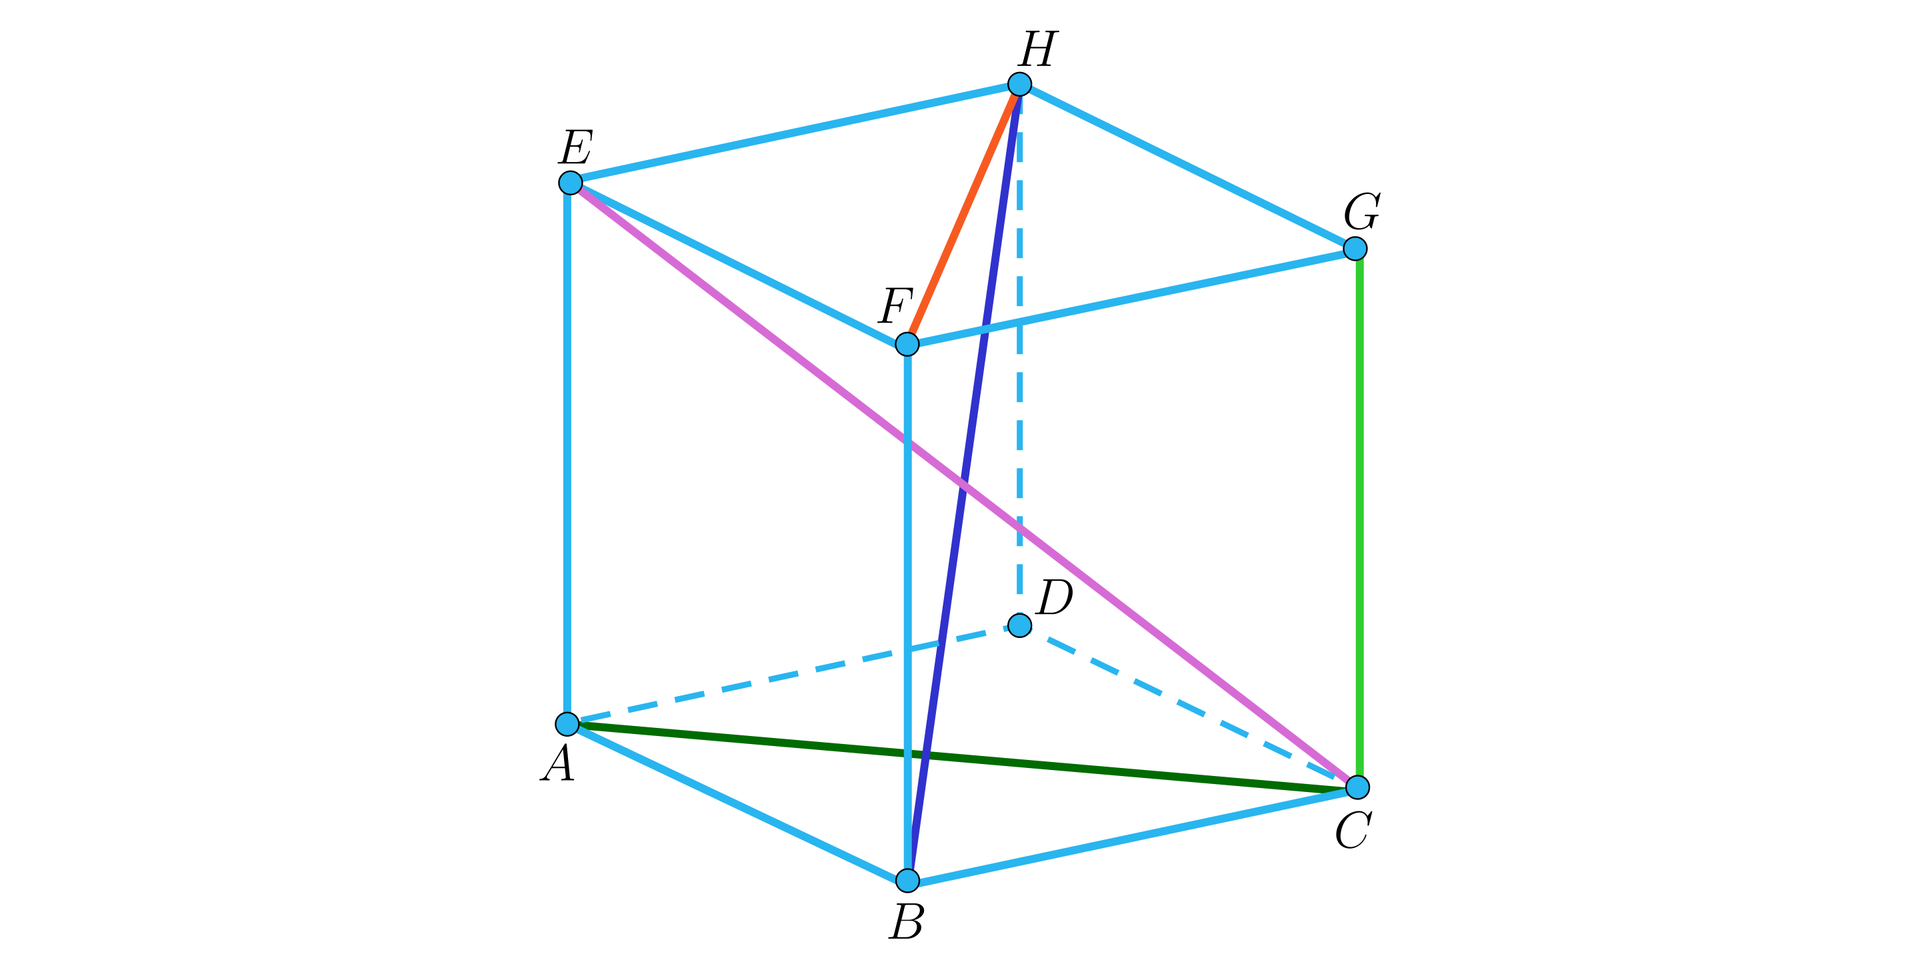 Rysunek przedstawia graniastosłup prosty, którego podstawą jest romb. Wierzchołki dolnej podstawy graniastosłupa to A, B, C ,D , a wierzchołki górnej podstawy to E, F, G, H. W graniastosłupie zaznaczono następujące odcinki: odcinek AC czyli dłuższą przekątną podstawy graniastosłupa, odcinek BH czyli krótszą przekątną graniastosłupa, odcinek EC czyli dłuższą przekątną graniastosłupa, odcinek FH czyli krótszą przekątną podstawy graniastosłupa oraz odcinek GC czyli krawędź ściany bocznej graniastosłupa.